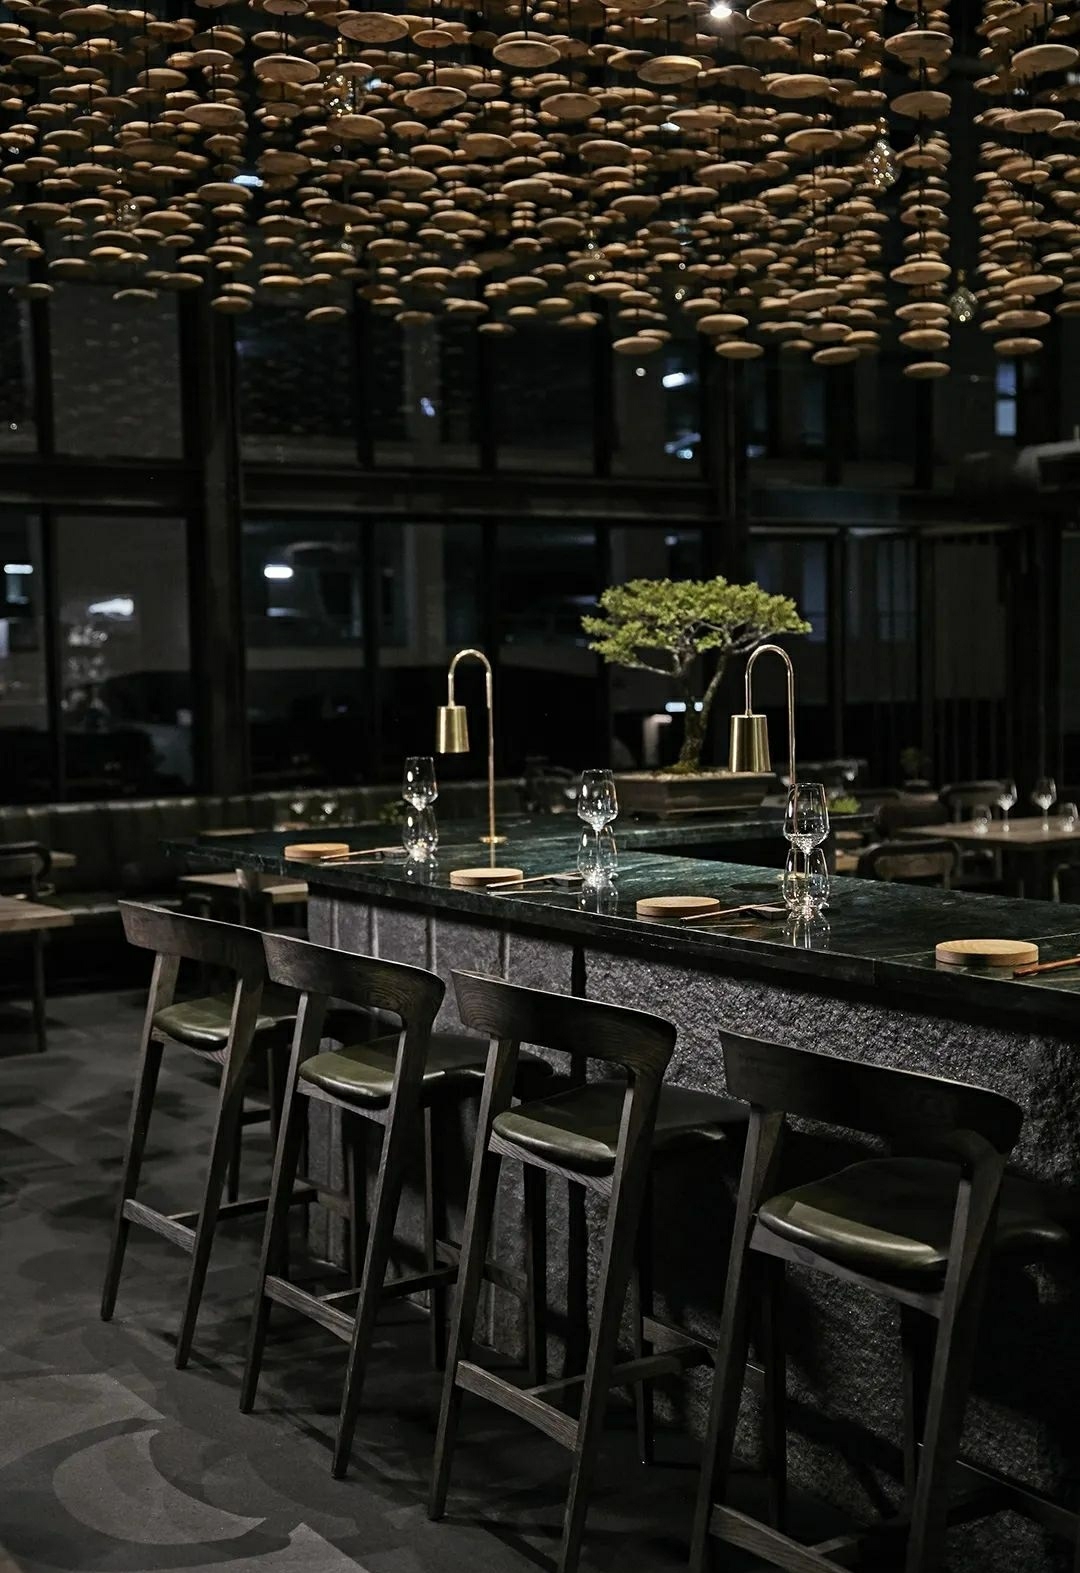 创造了一个融合日本和南非文化的时尚空间，日本沉浸式的日式餐厅